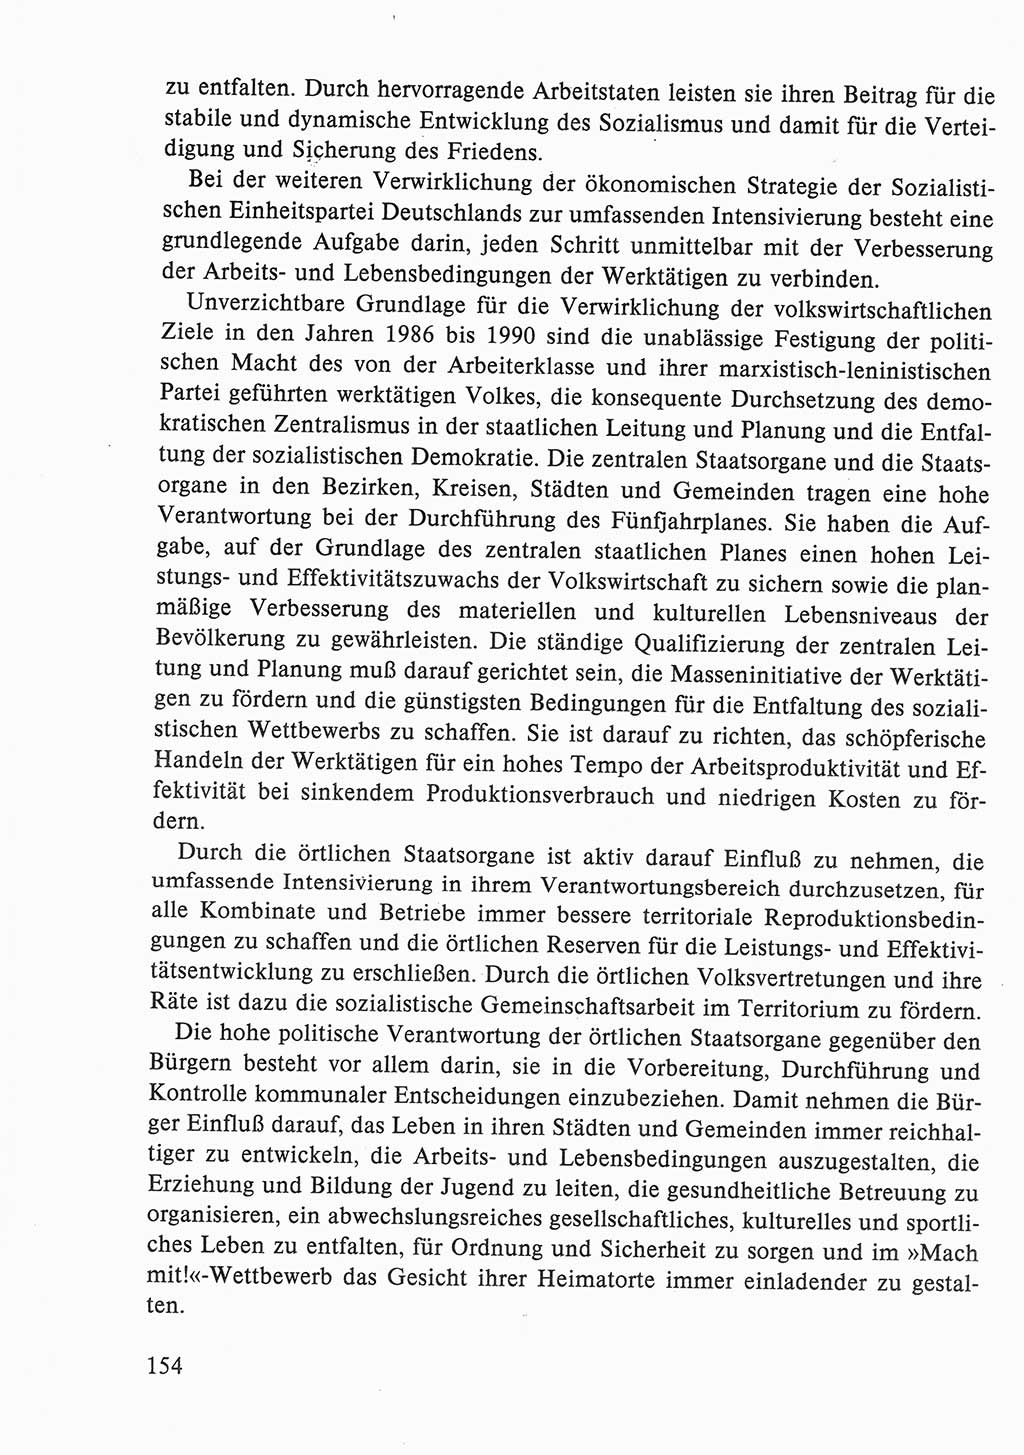 Dokumente der Sozialistischen Einheitspartei Deutschlands (SED) [Deutsche Demokratische Republik (DDR)] 1986-1987, Seite 154 (Dok. SED DDR 1986-1987, S. 154)